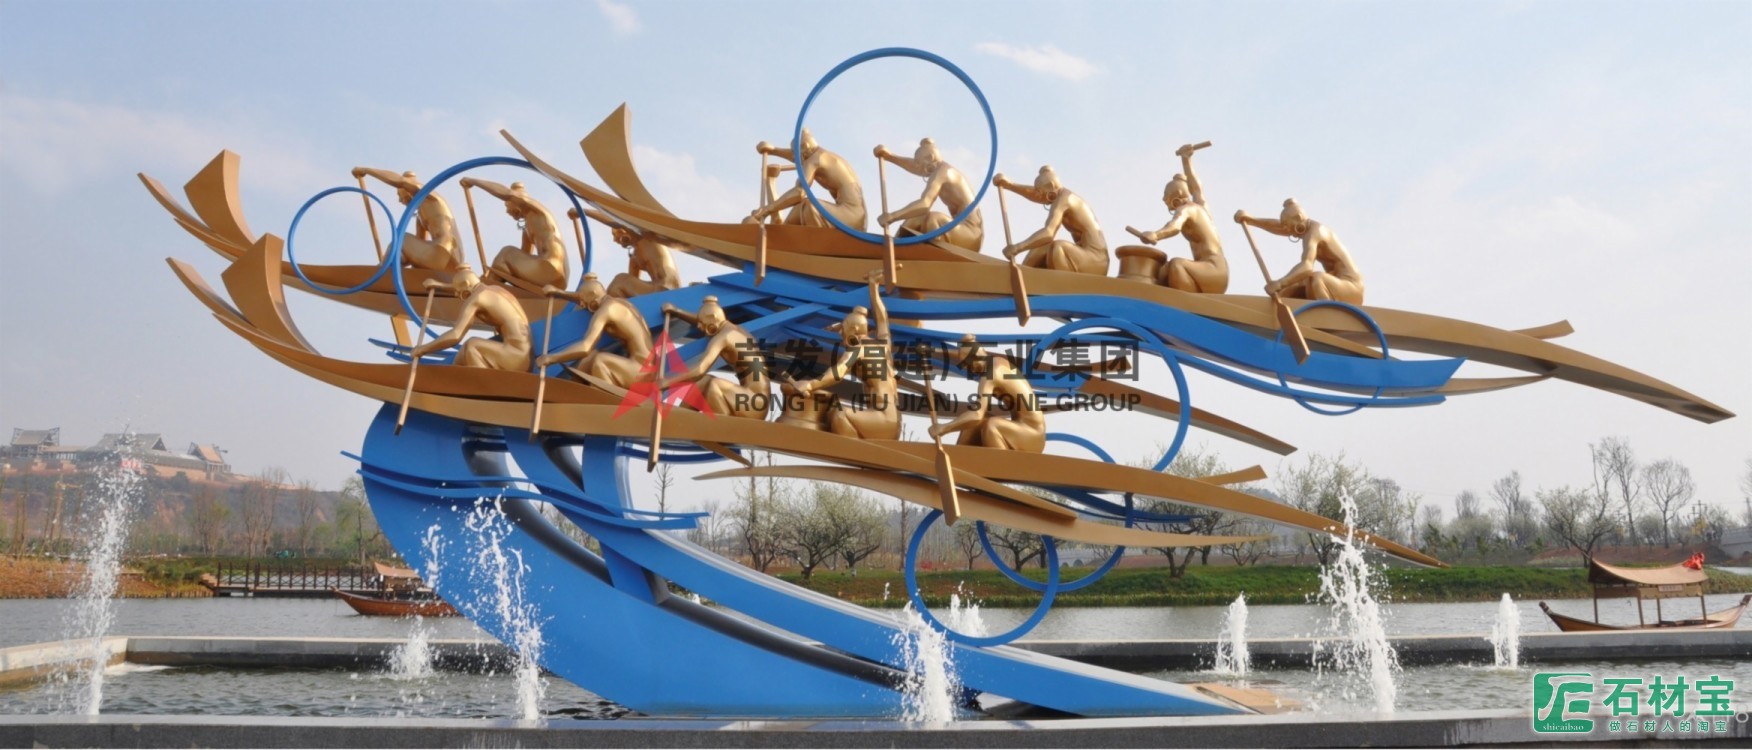 云南昆明湿地公园雕塑工程